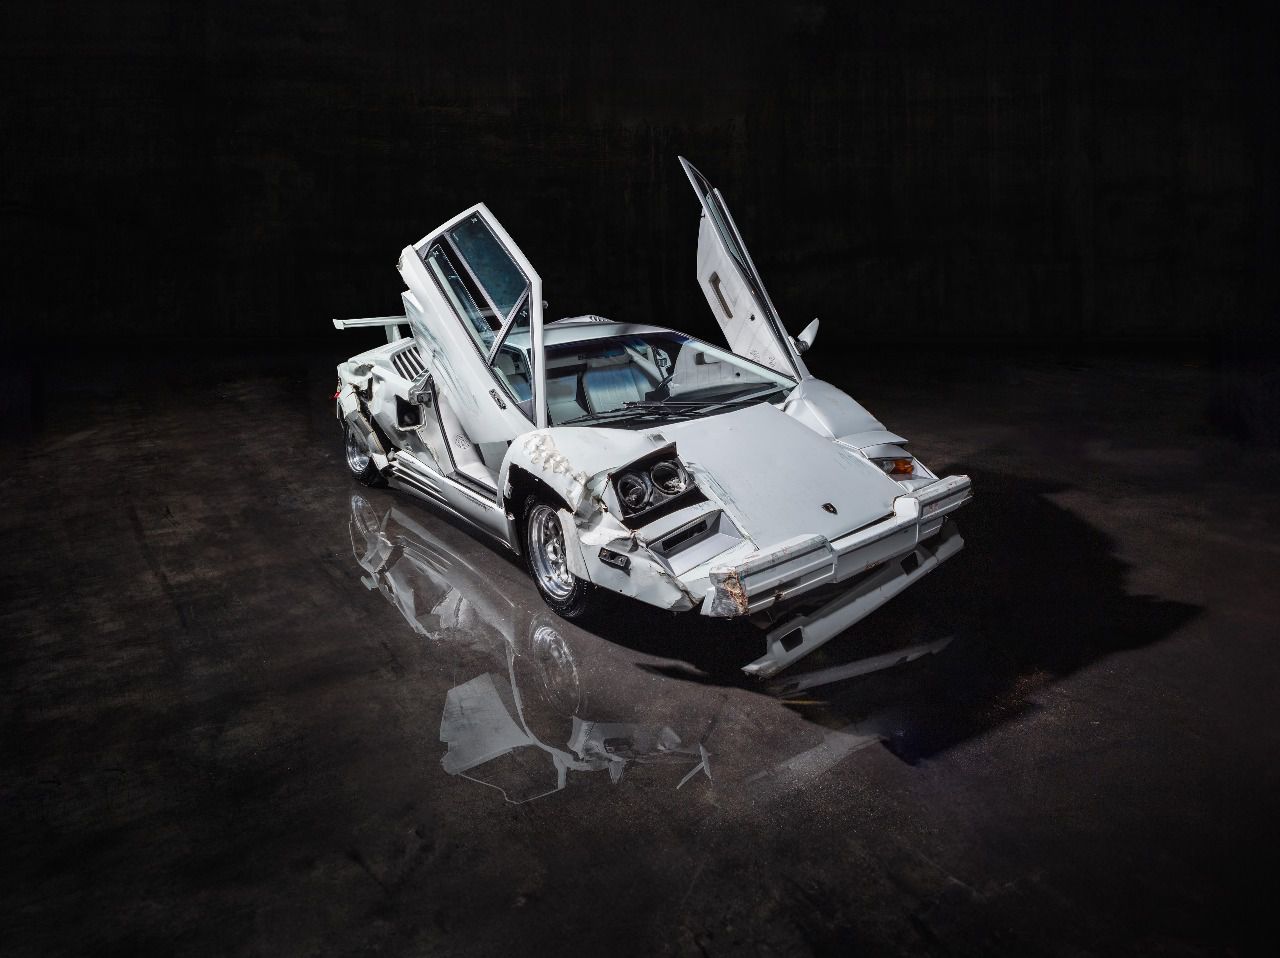 Historia del cine y del motor: El Lamborghini Countach del Lobo de Wall Street